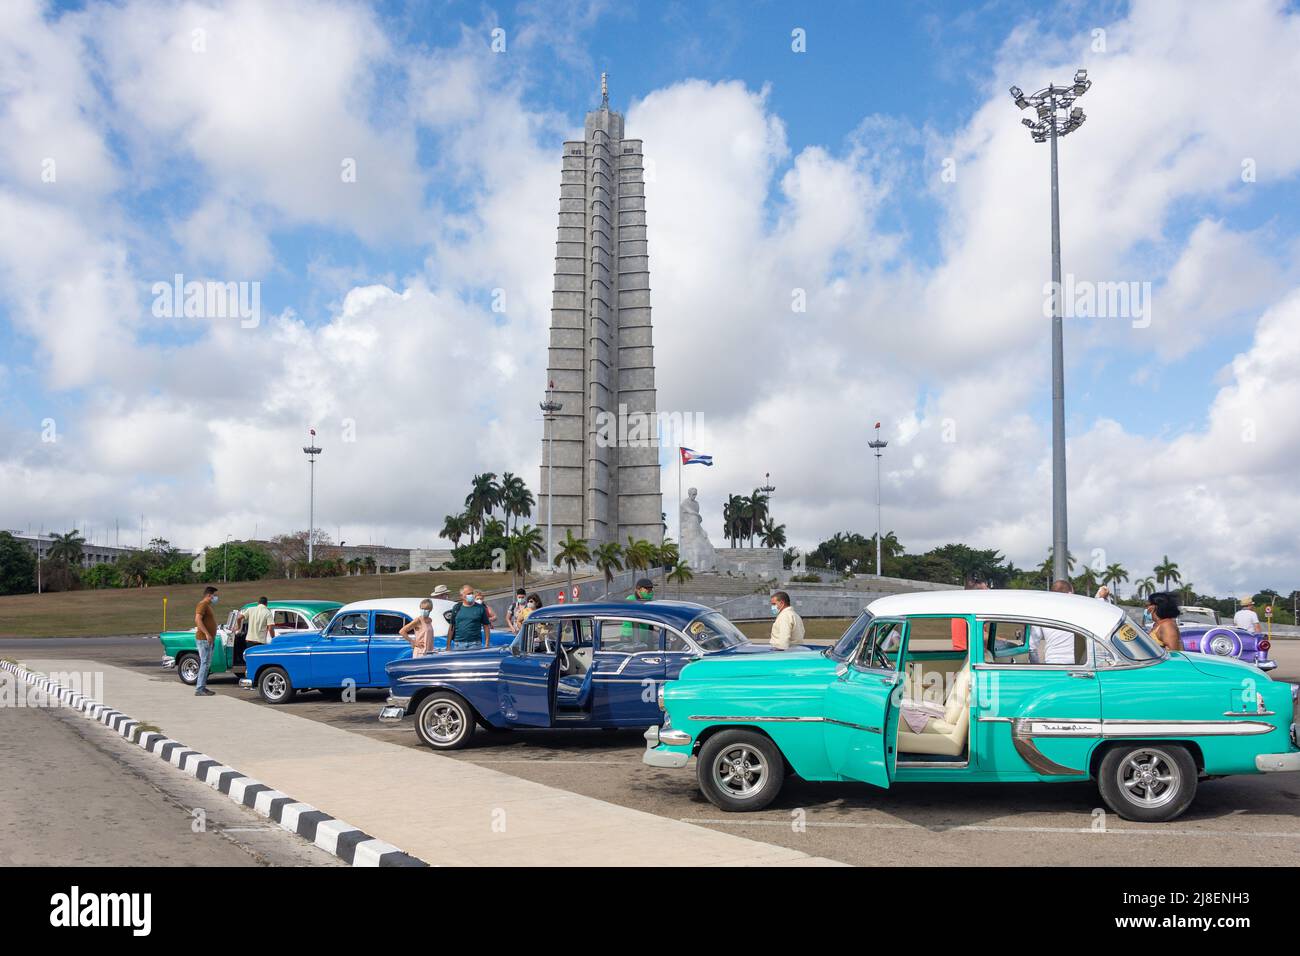 Classic American cars and Monumento a José Martí (José Martí Memorial), Plaza de la Revolución, Avenida Paseo, Havana, La Habana, Republic of Cuba Stock Photo